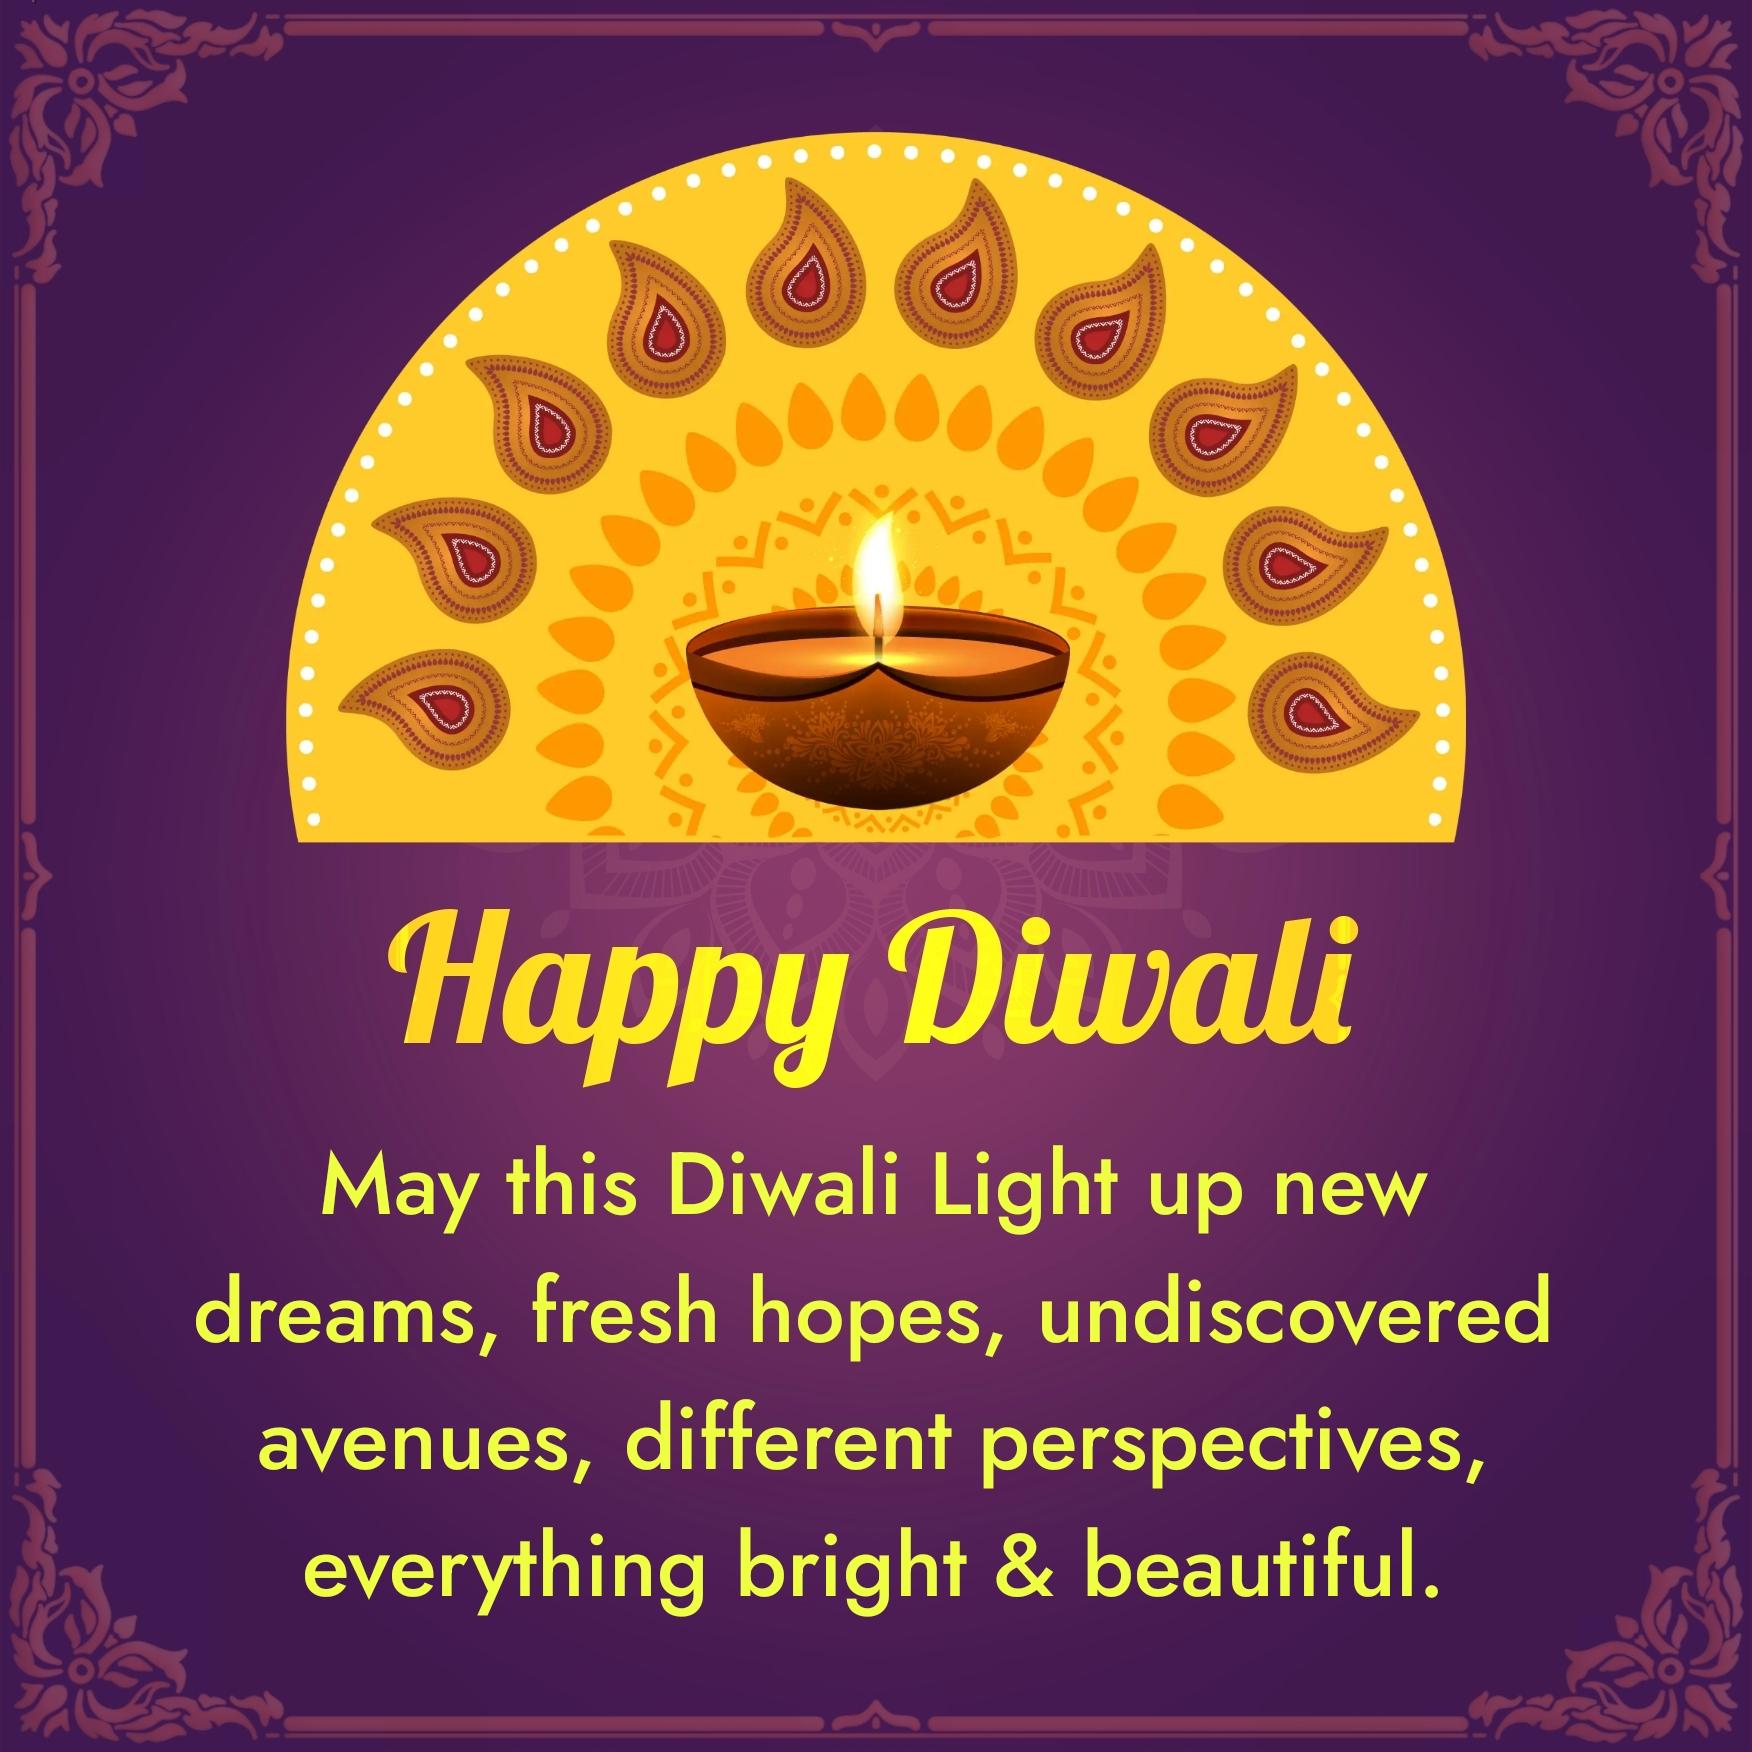 May this Diwali Light up new dreams fresh hopes